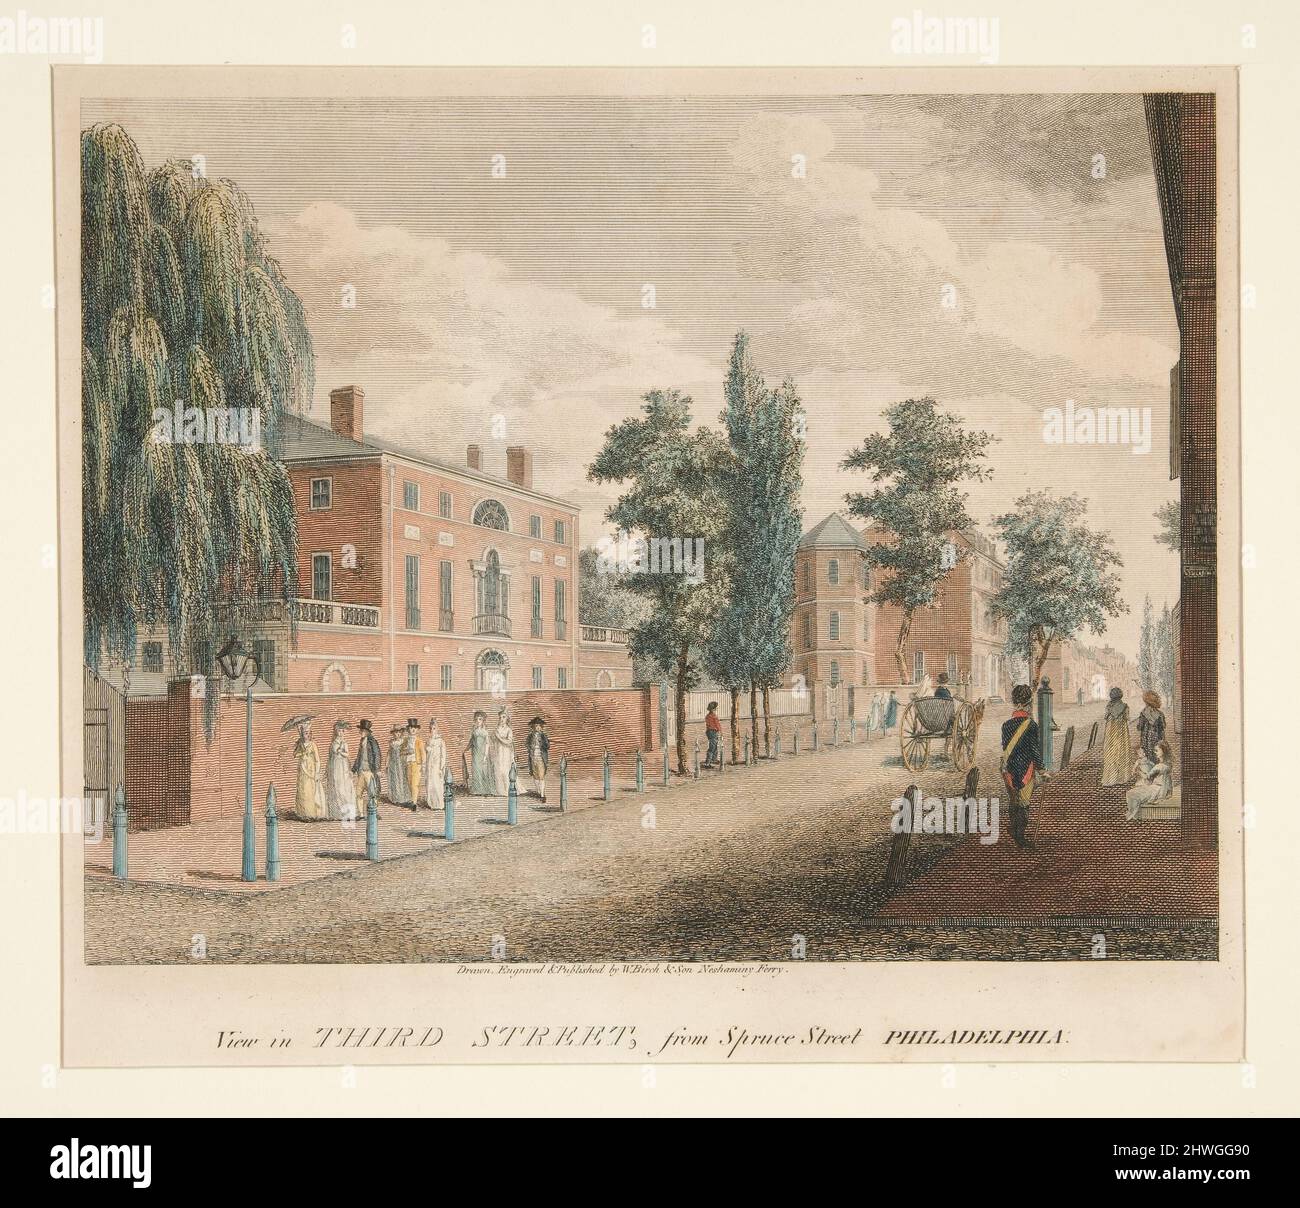 Blick in der Third Street, von der Spruce Street Philadelphia. Künstler: William Russell Birch, Brite, 1755–1834 Stockfoto